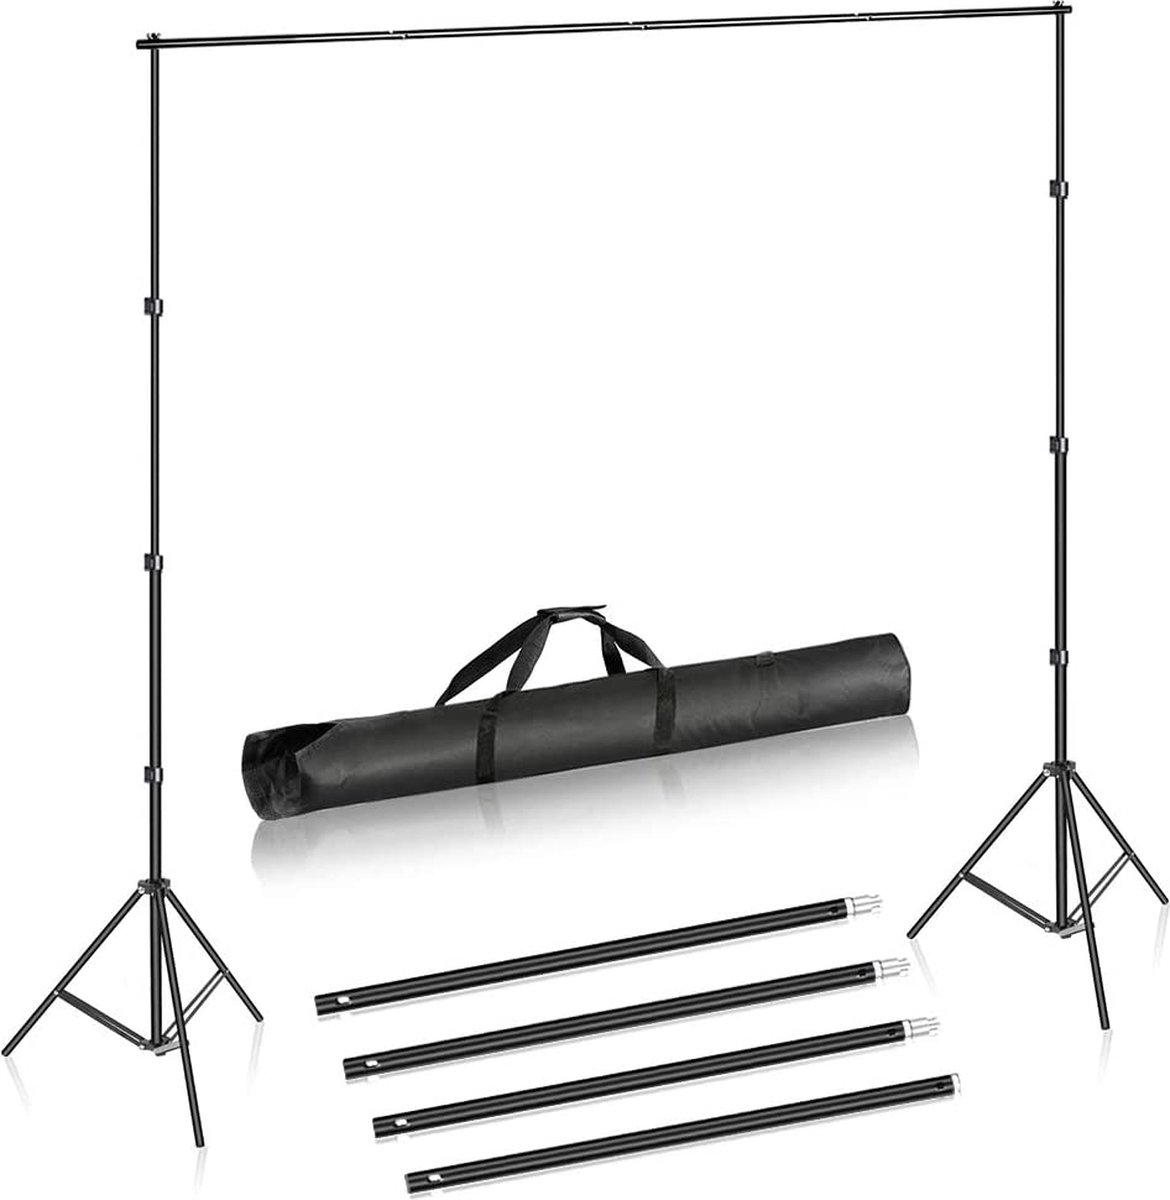 Neewer® - Achtergrondsteunsysteem voor Fotostudio's - 2 x 3 m - Verstelbare Achtergrondstandaard met 4 Dwarsbalken - 6 Achtergrondklemmen - 2 Zandzakken en Draagtas voor Portret- en Studiofotografie